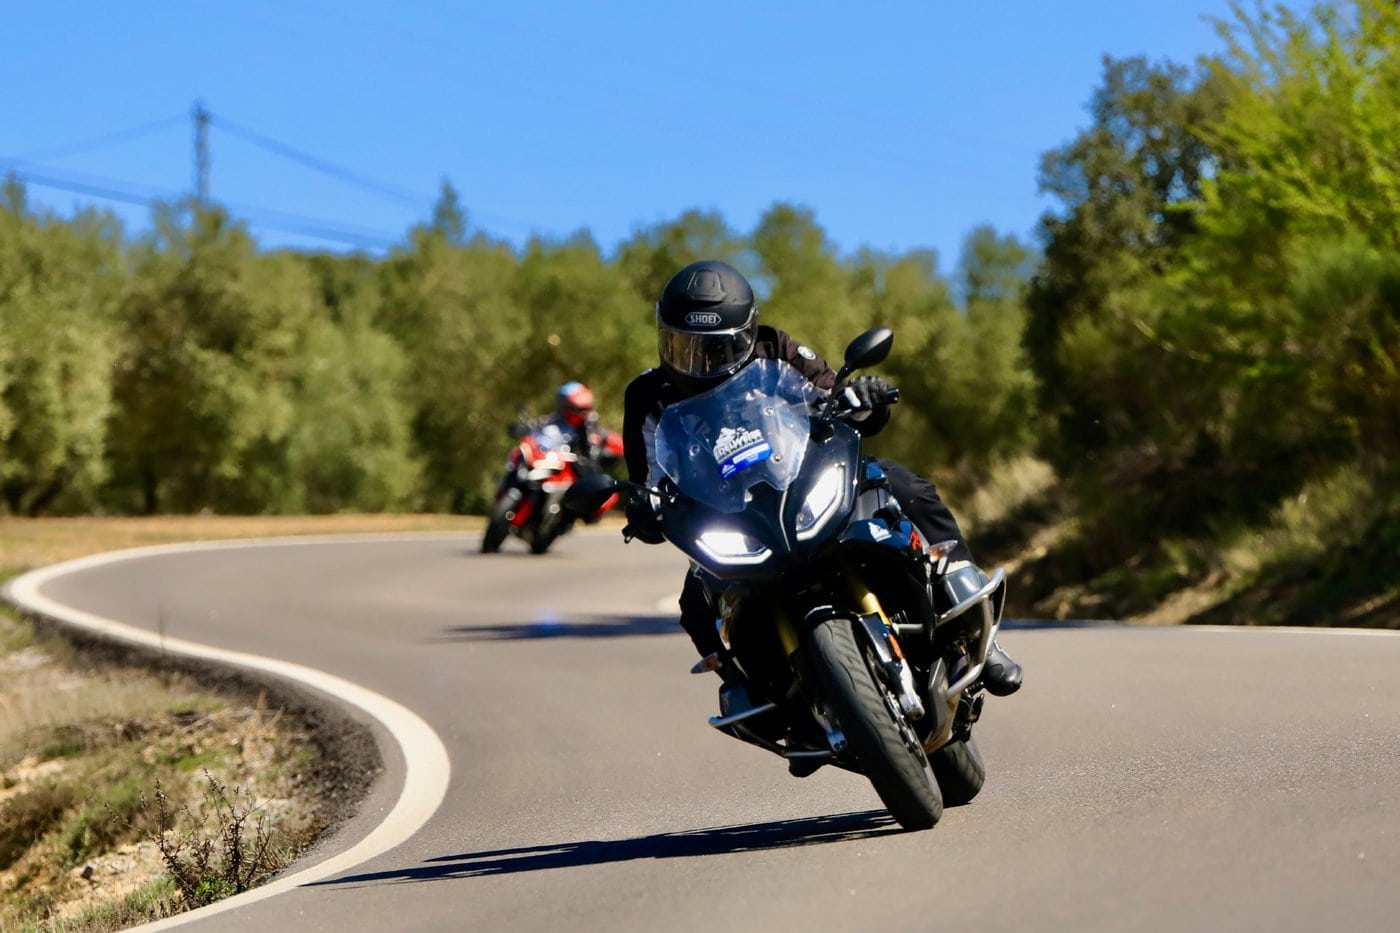 Traumhafte Kurvenstrassen erwarten die Teilnehmer auf der Andalusien-Tour von Edelweiss Bike Travel.